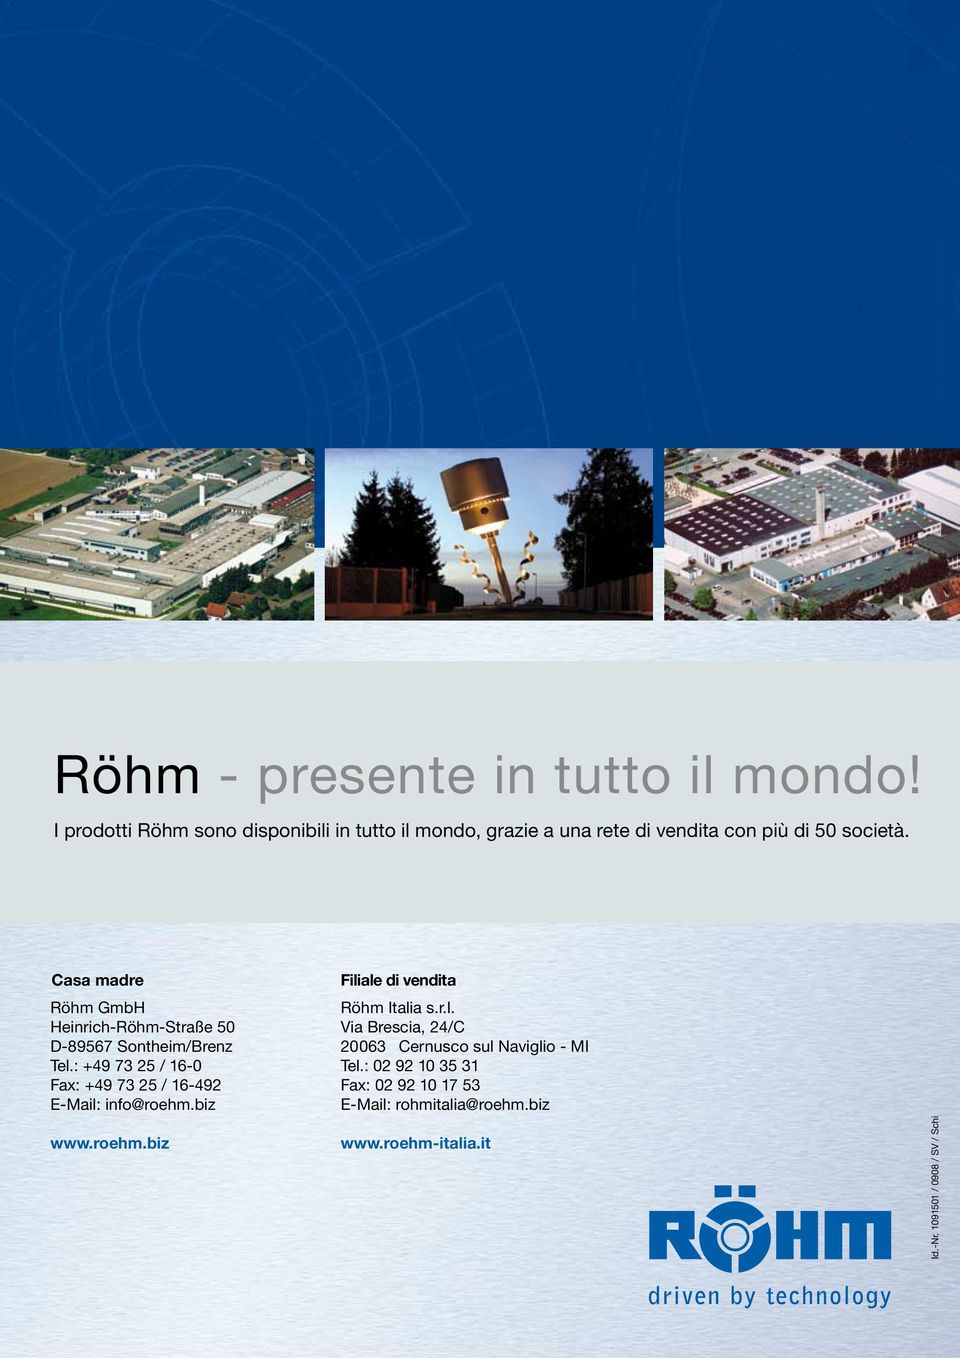 Casa madre Filiale di vendita Röhm GmbH Röhm Italia s.r.l. Heinrich-Röhm-Straße 50 Via Brescia, 24/C D-89567 Sontheim/Brenz 20063 Cernusco sul Naviglio - MI Tel.